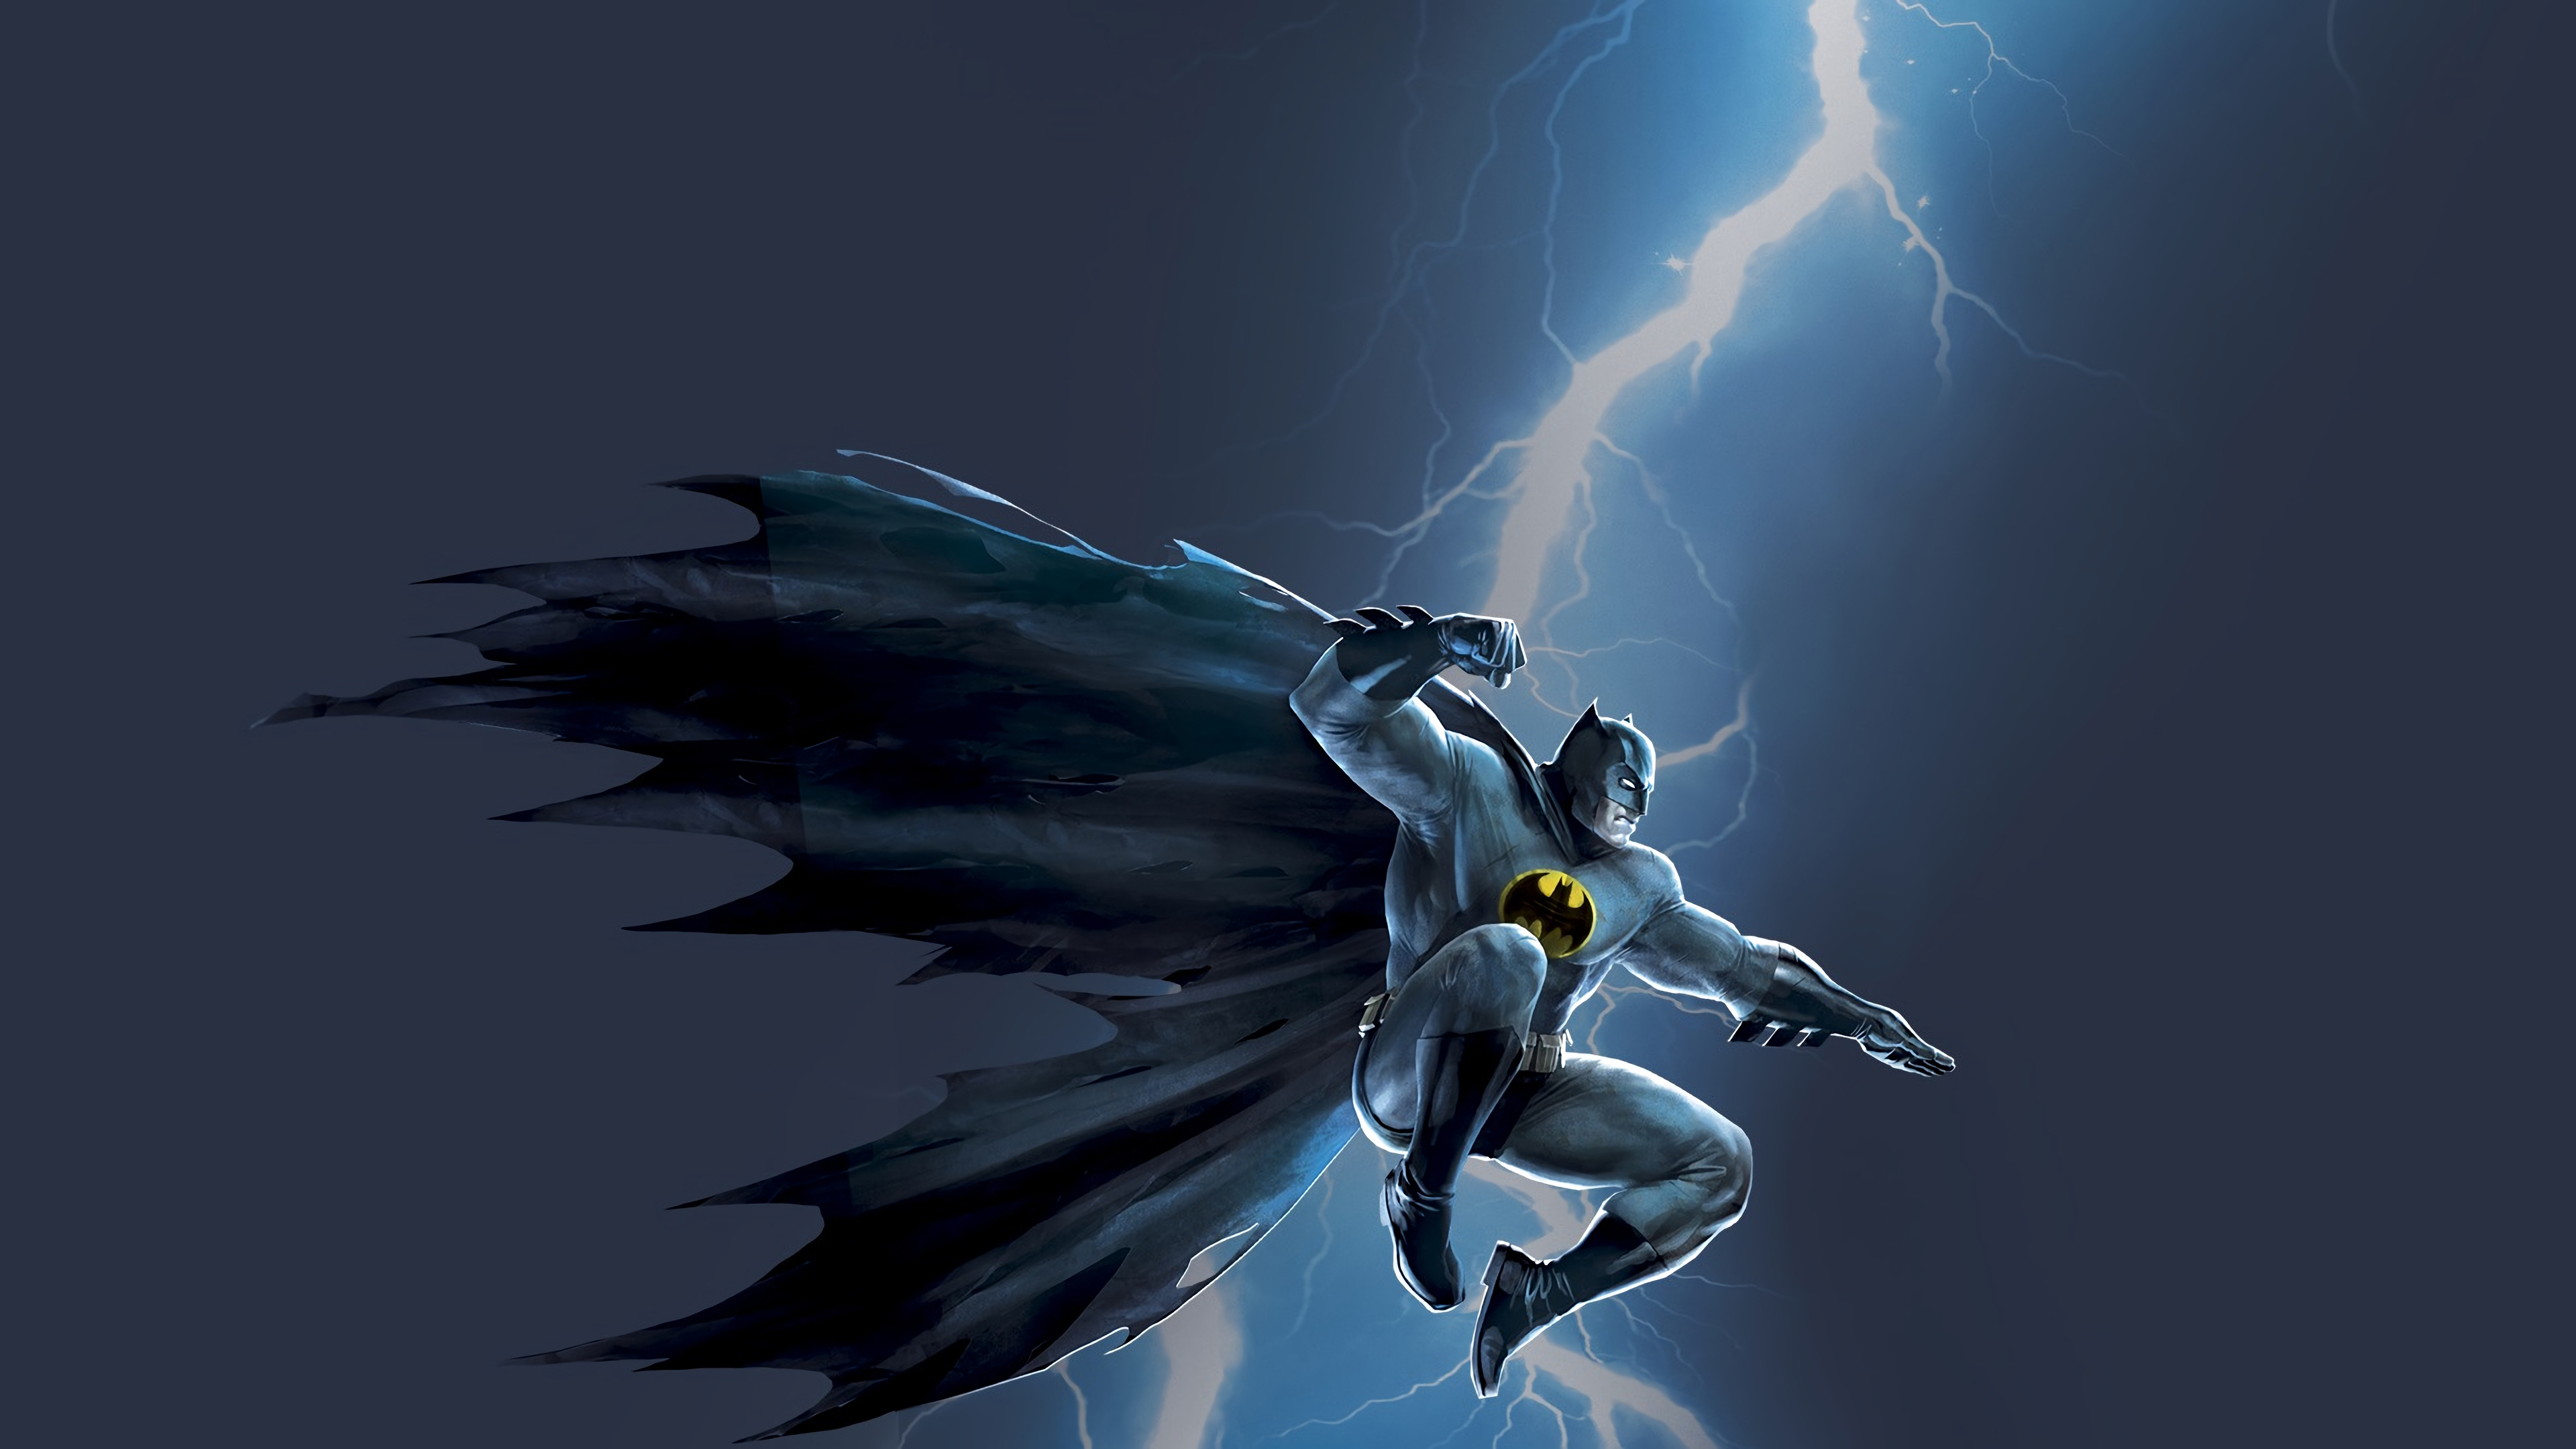 Batman The Dark Knight Storm - Batman The Dark Knight Returns Part 1 - HD Wallpaper 